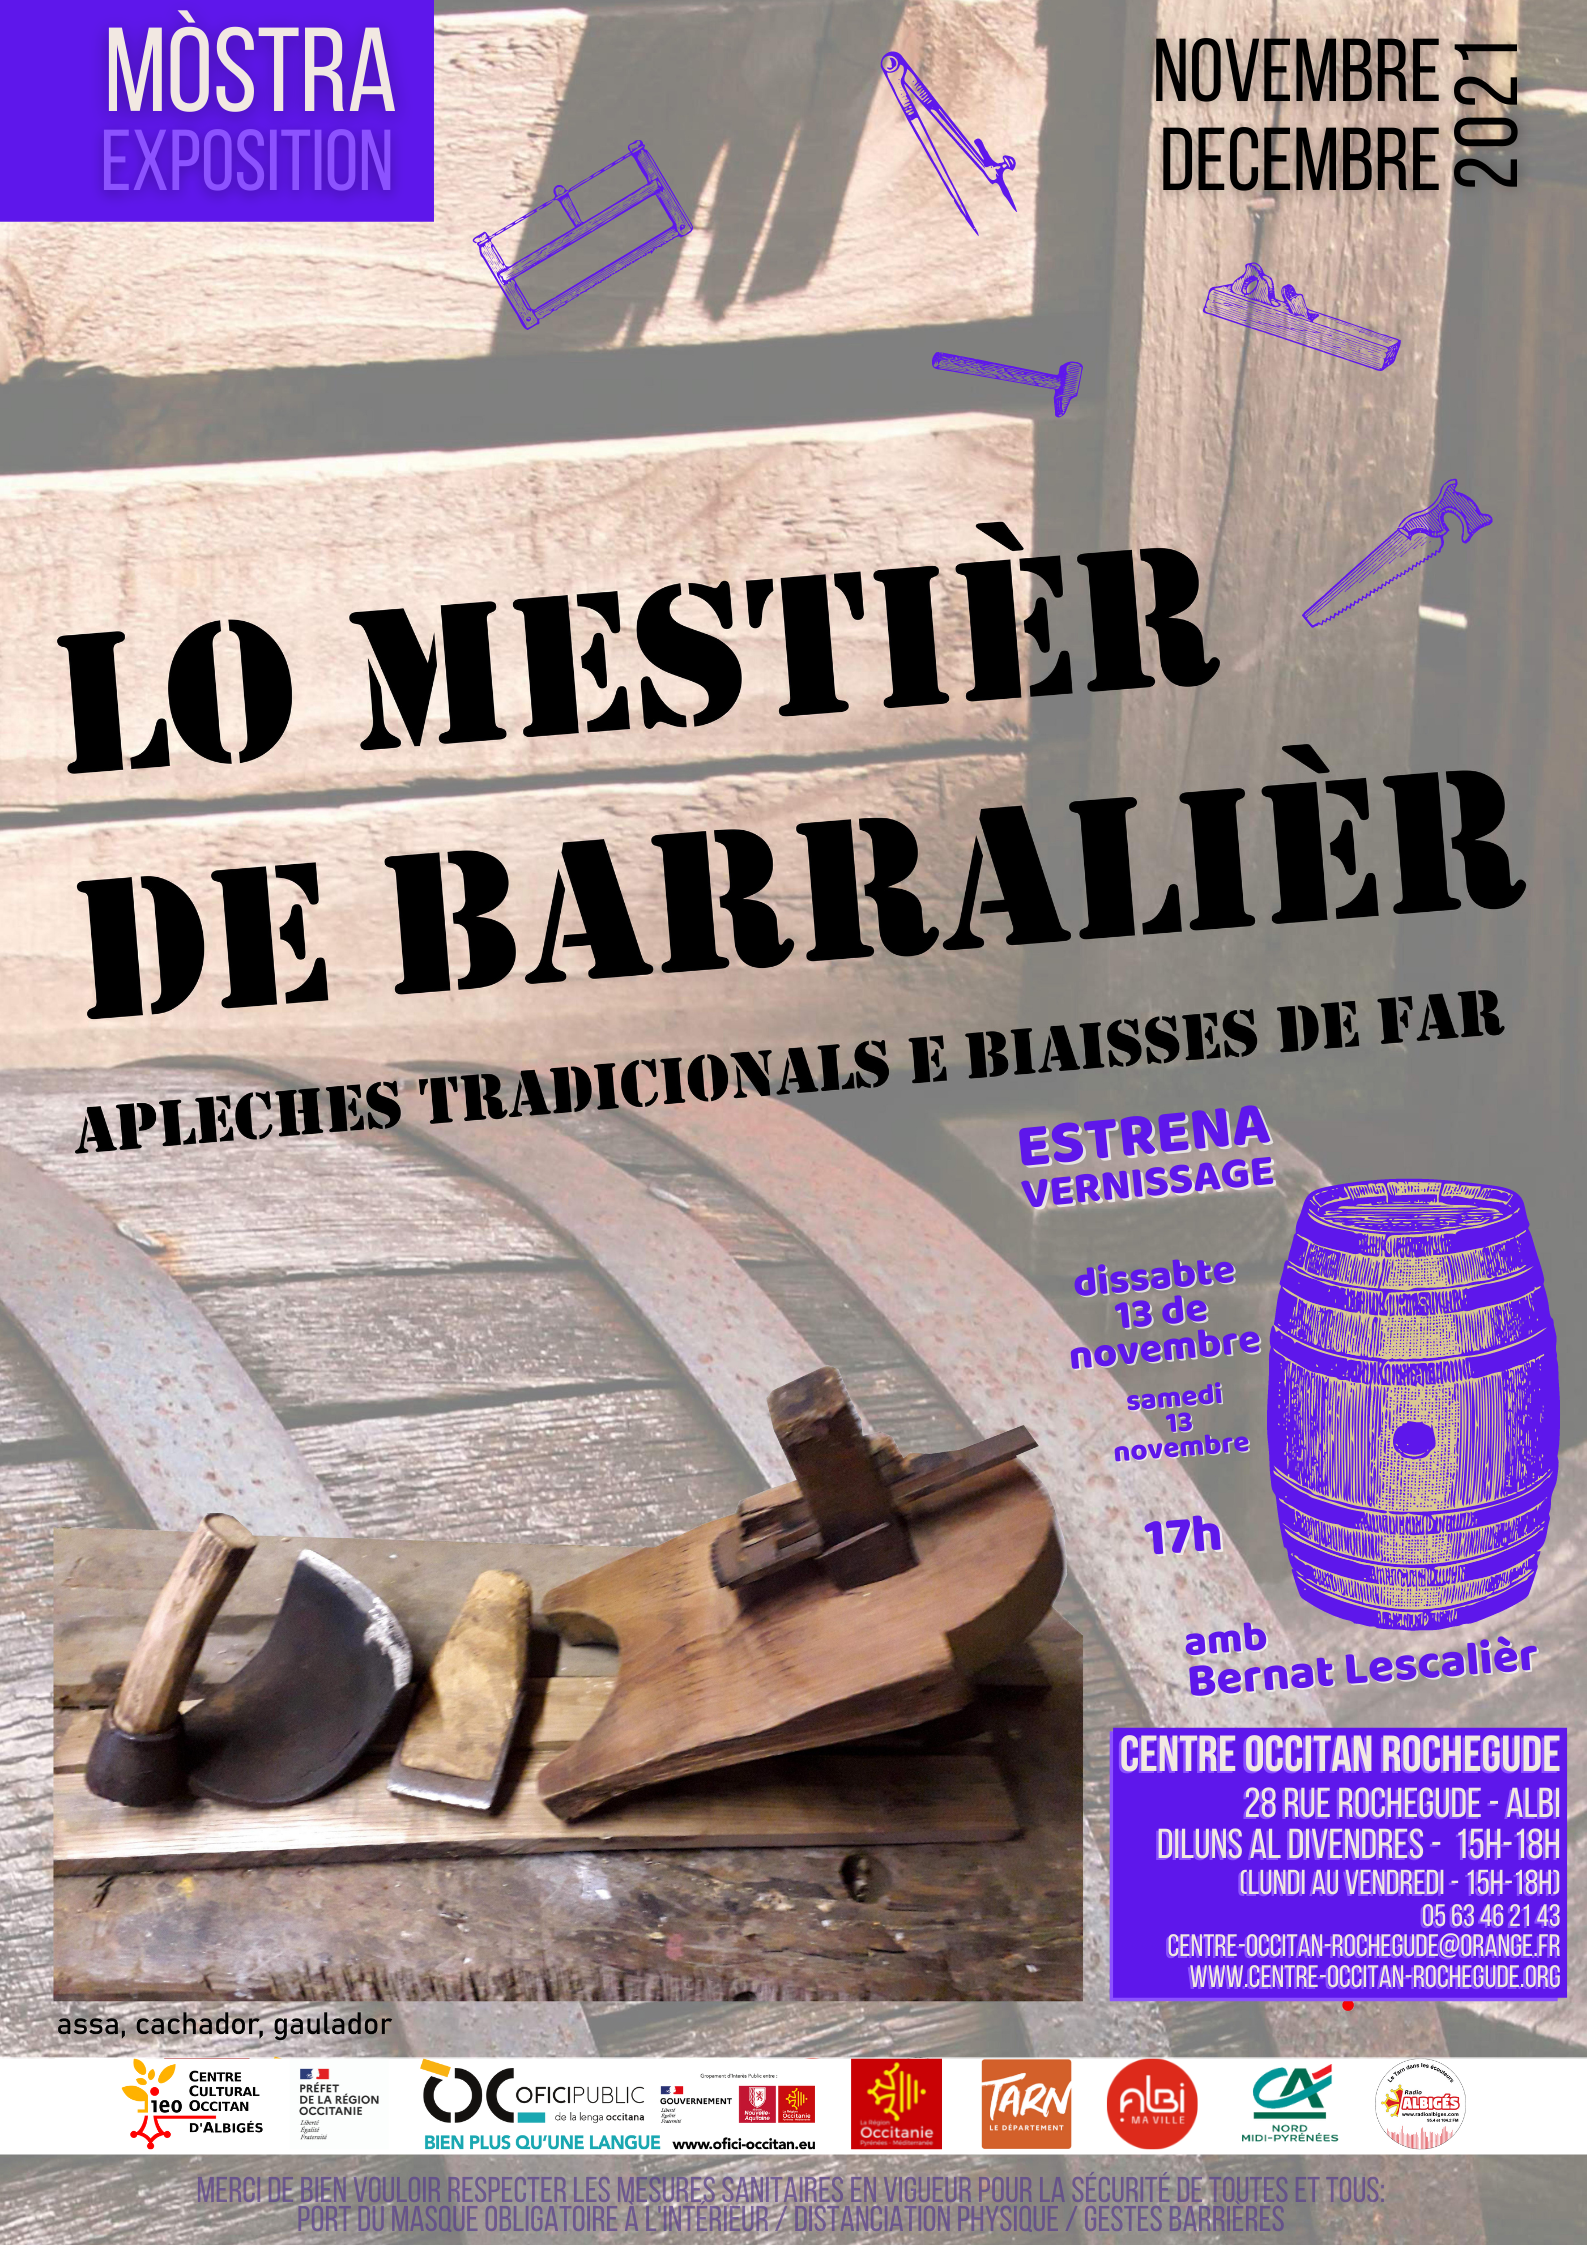 You are currently viewing Estrena de la mòstra “Lo mestièr de barralièr” amb Bernat Lescalièr